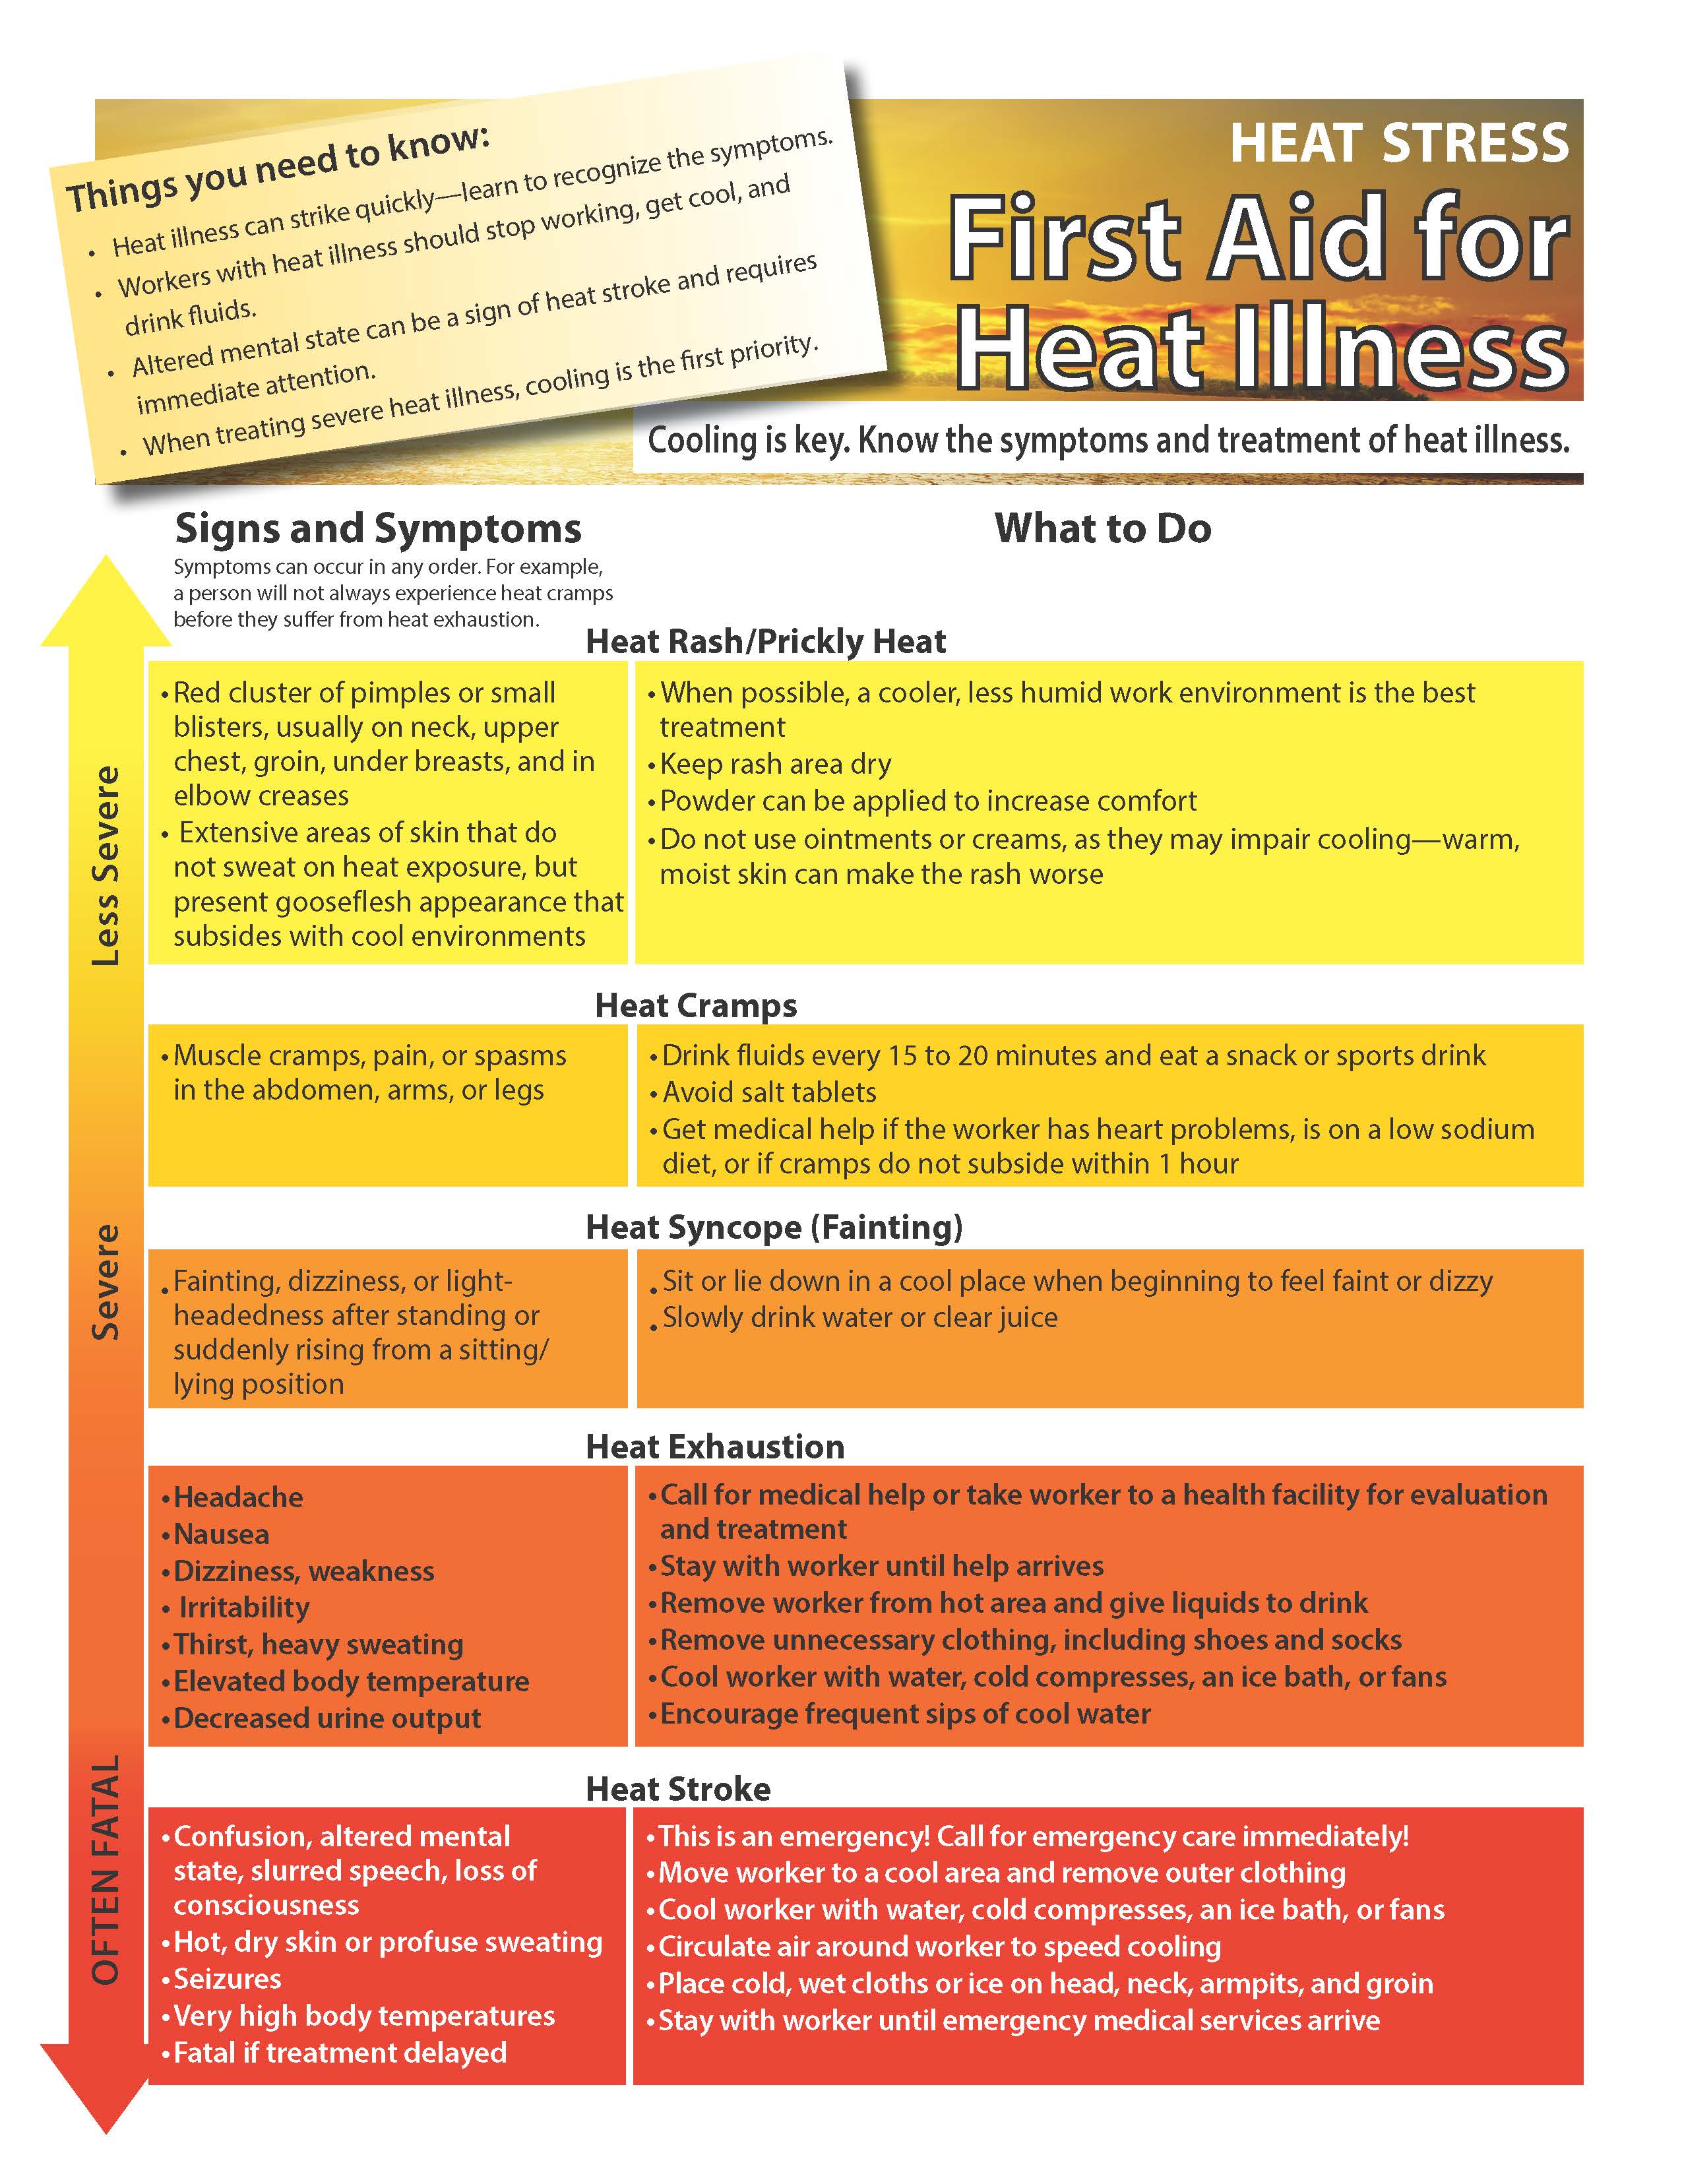 Heat Stress: First Aid for Heat Illness | NIOSH